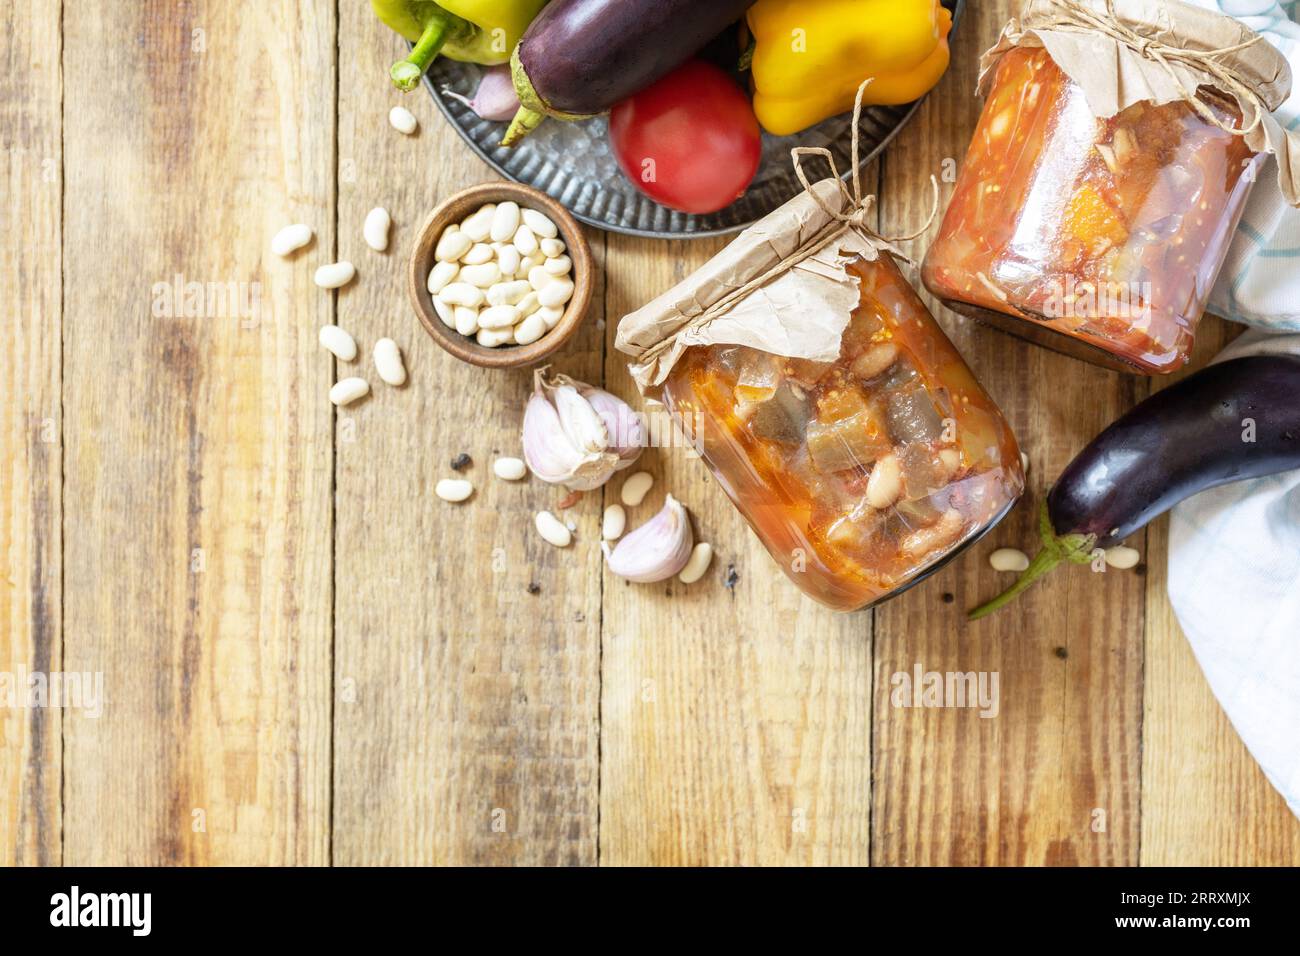 Gesundes, hausgemachtes fermentiertes Essen. Salat Aubergine mit Beanson ein rustikaler Tisch. Hauswirtschaft, Herbsternteerhaltung. Ansicht von oben. Leerzeichen kopieren. Stockfoto